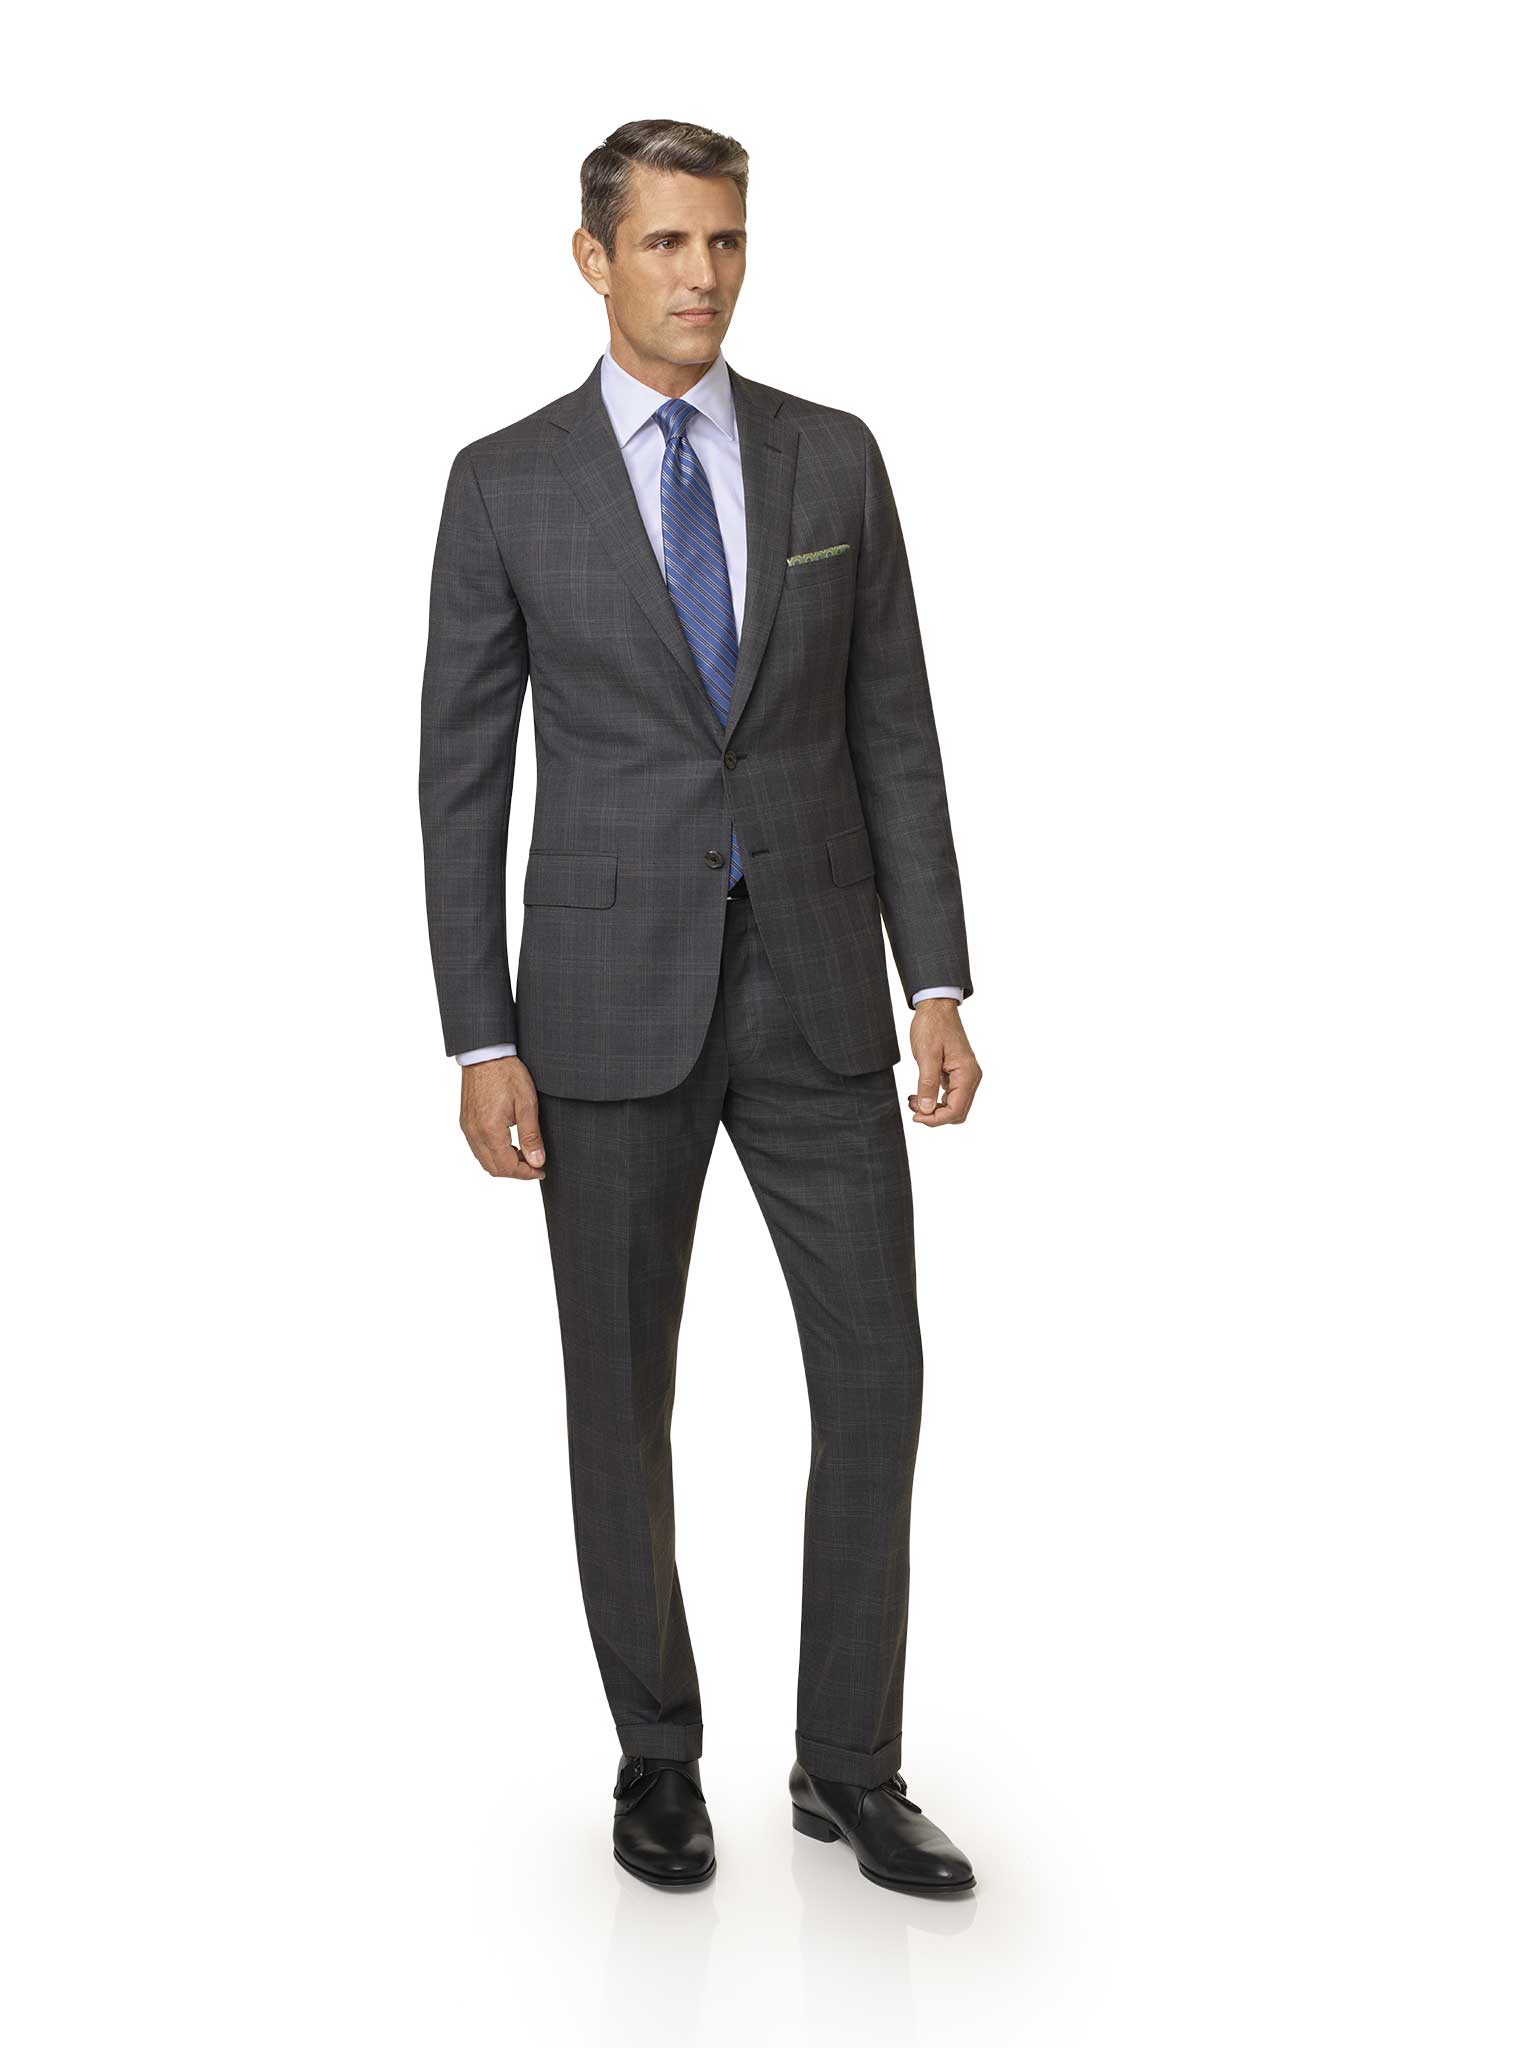 Men's Custom Suits                                                                                                                                                                                                                                        , Gray Plaid Suit